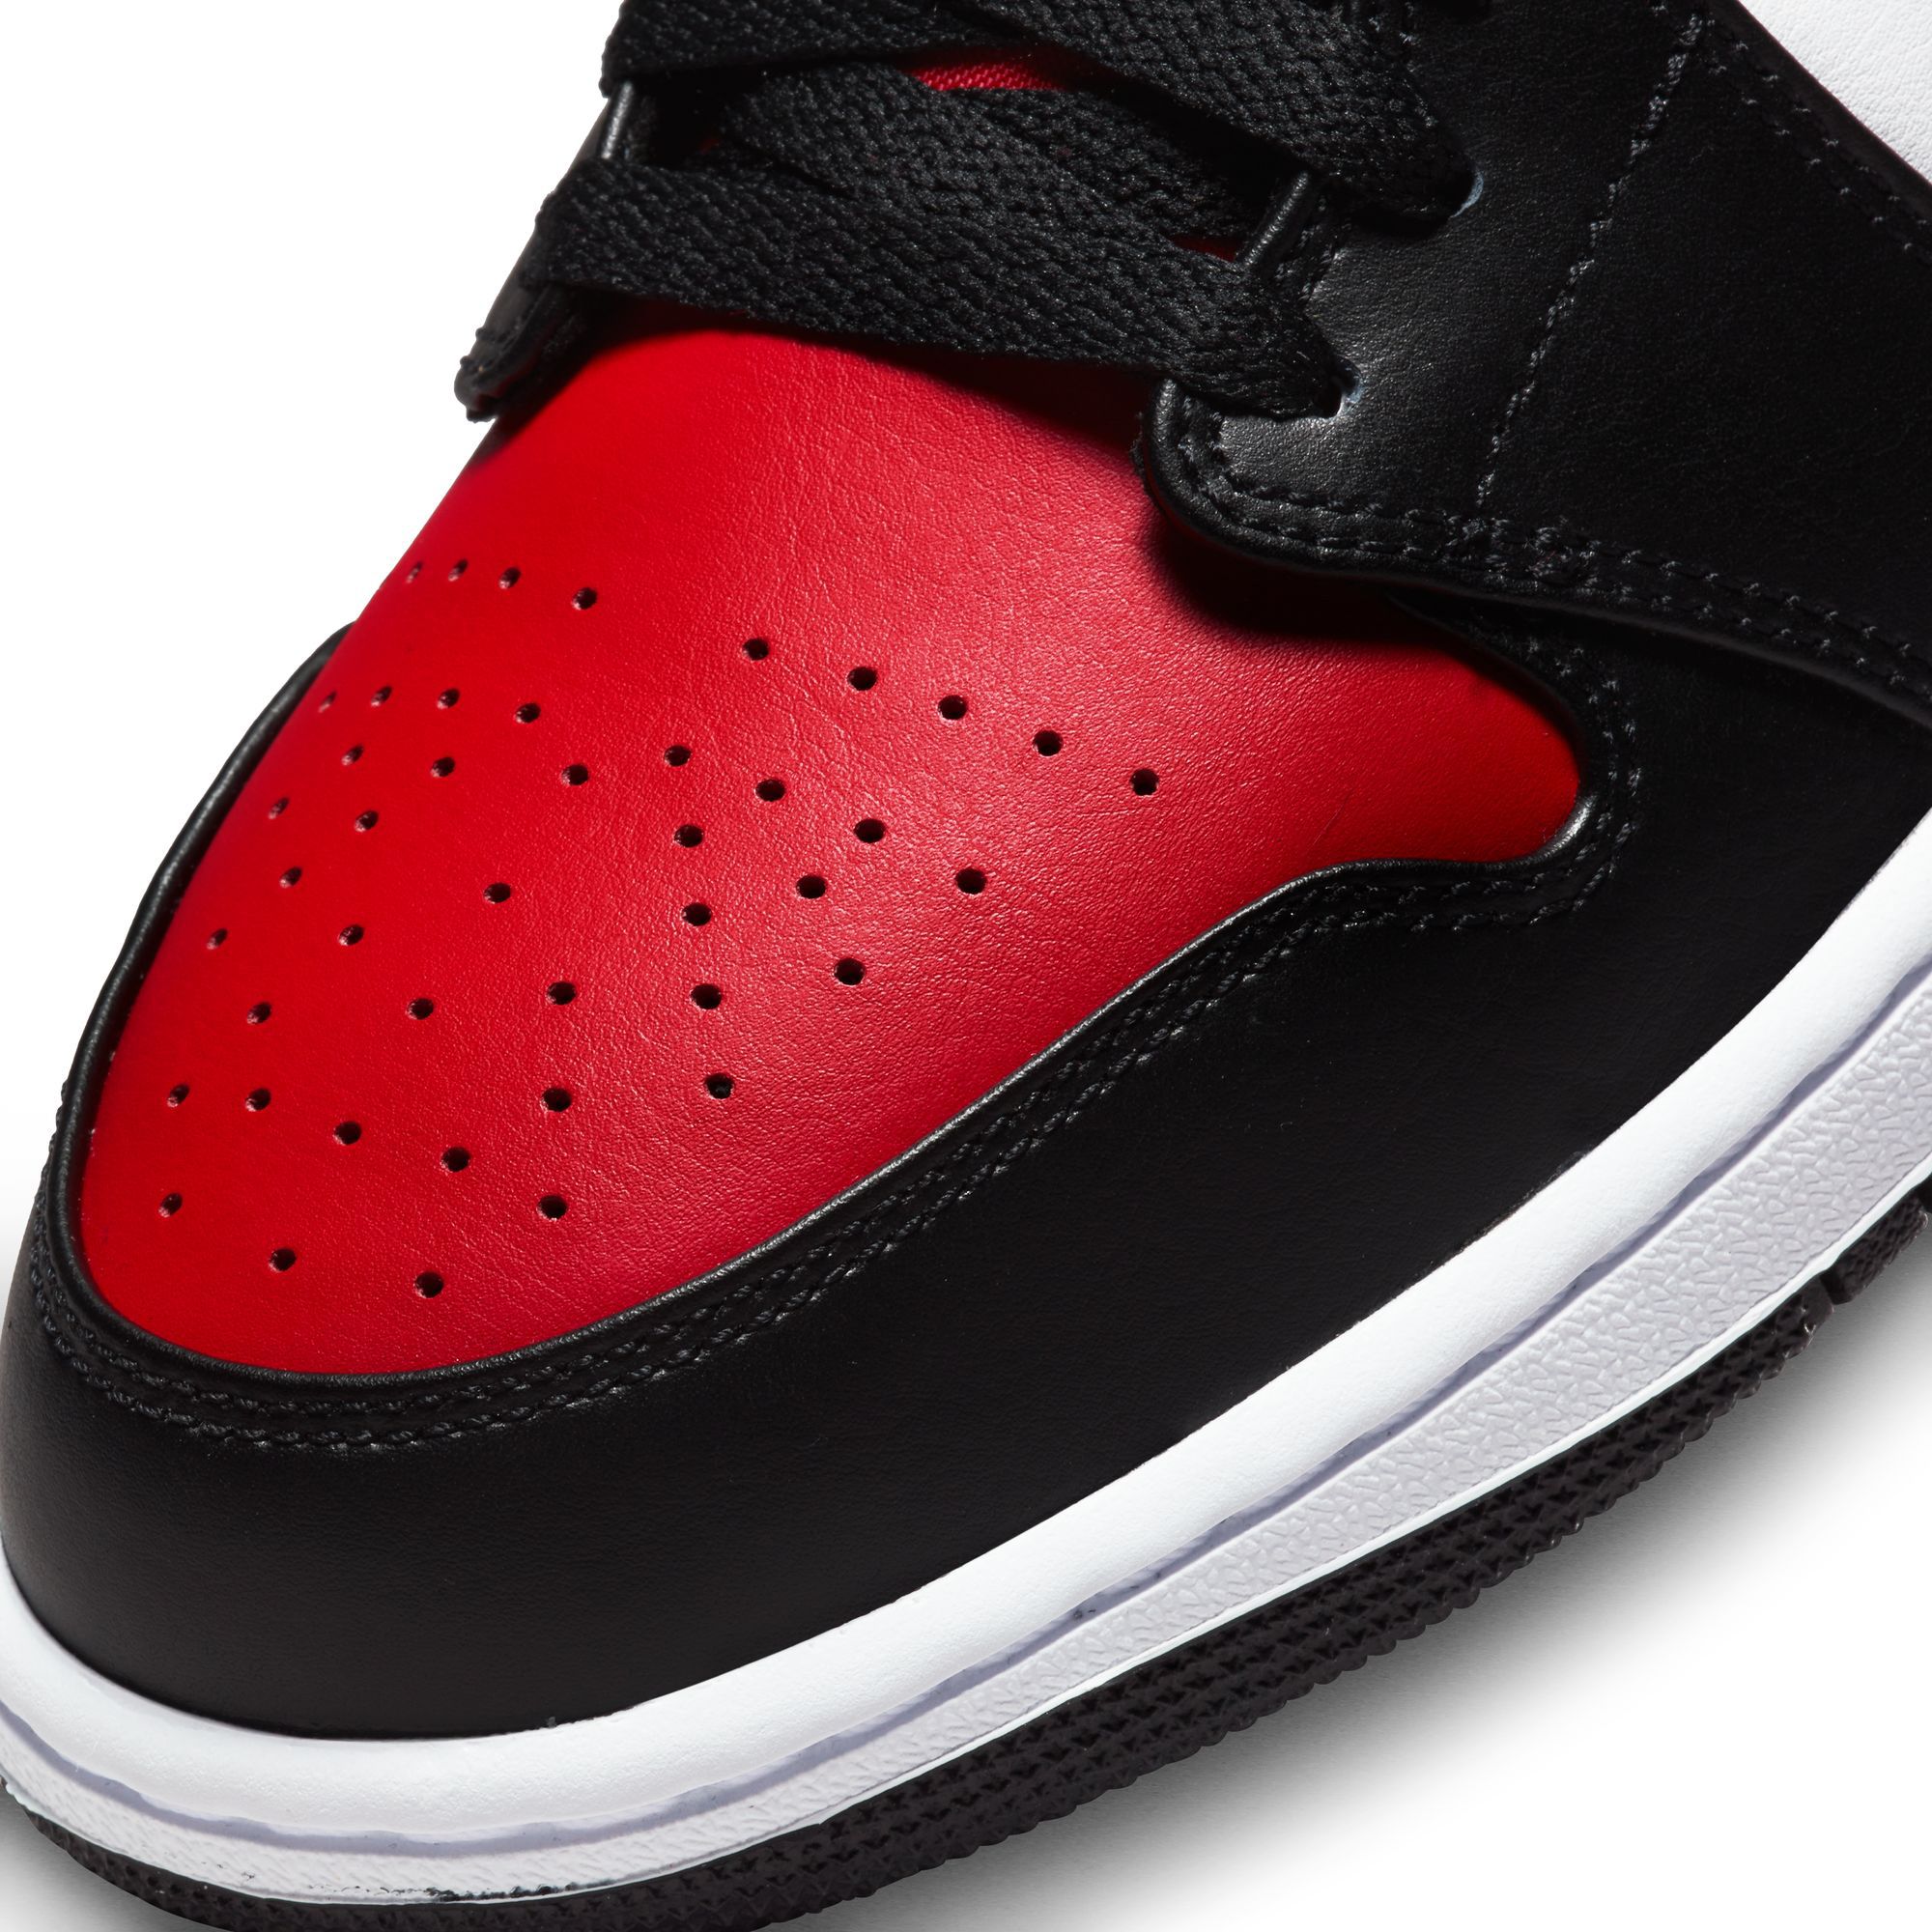 Men's Air Jordan 1 Mid Bred Toe (White/Black/Fire Red)(554724